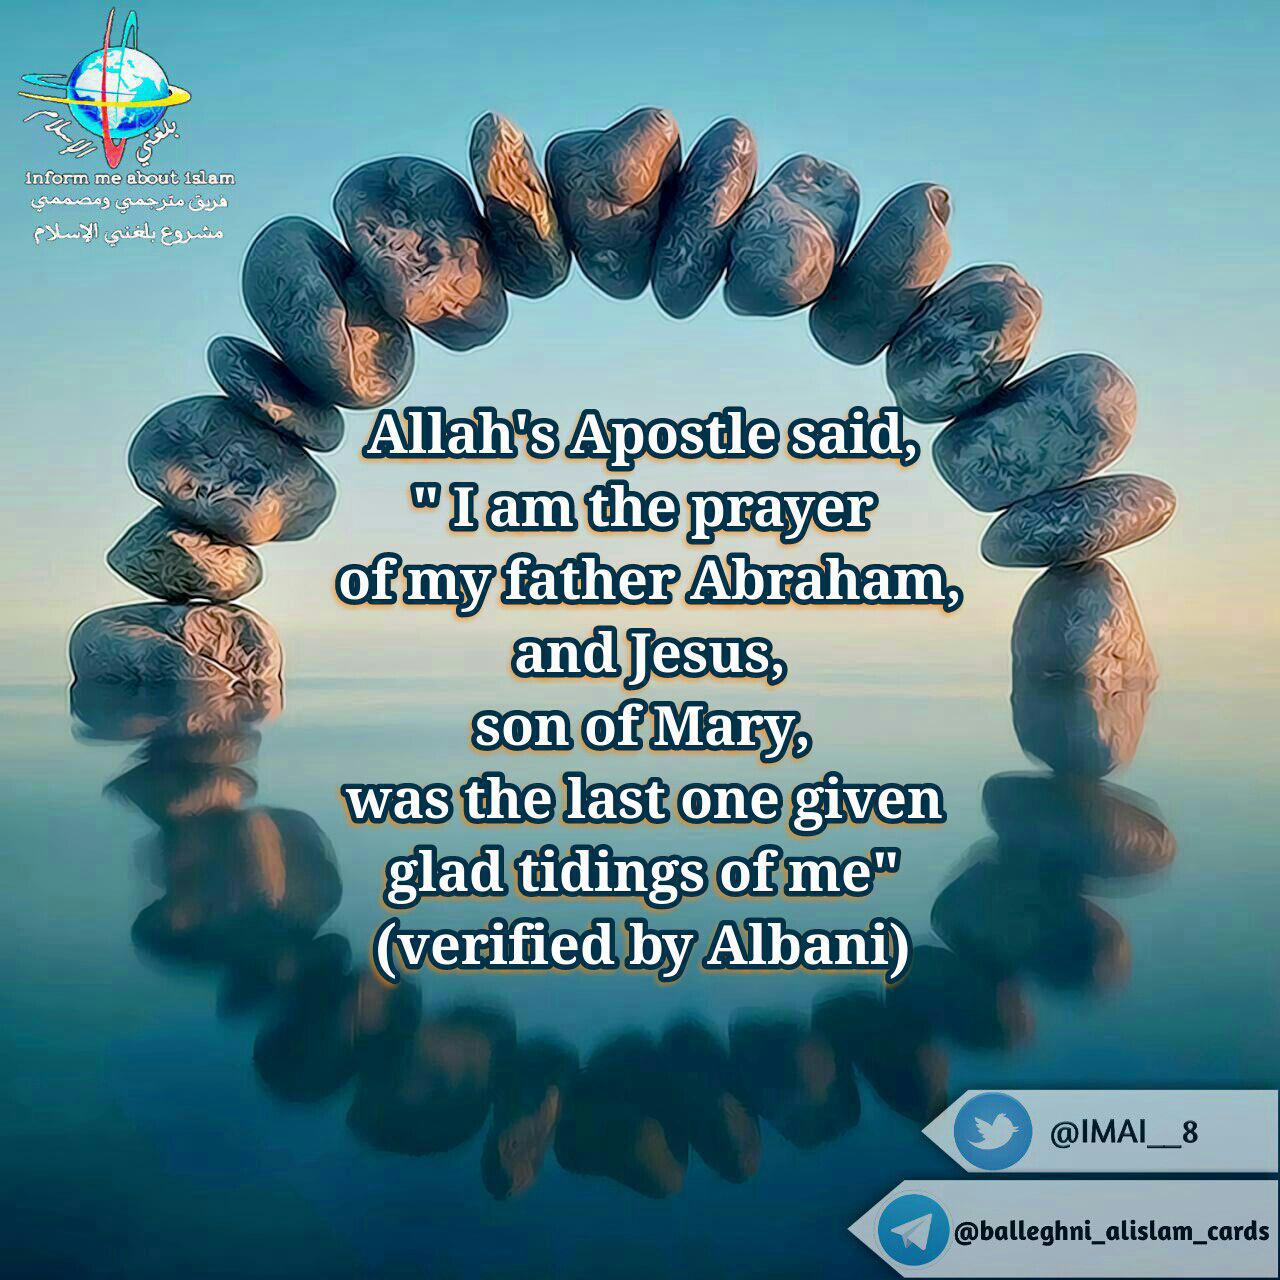 Allah's Apostle said,